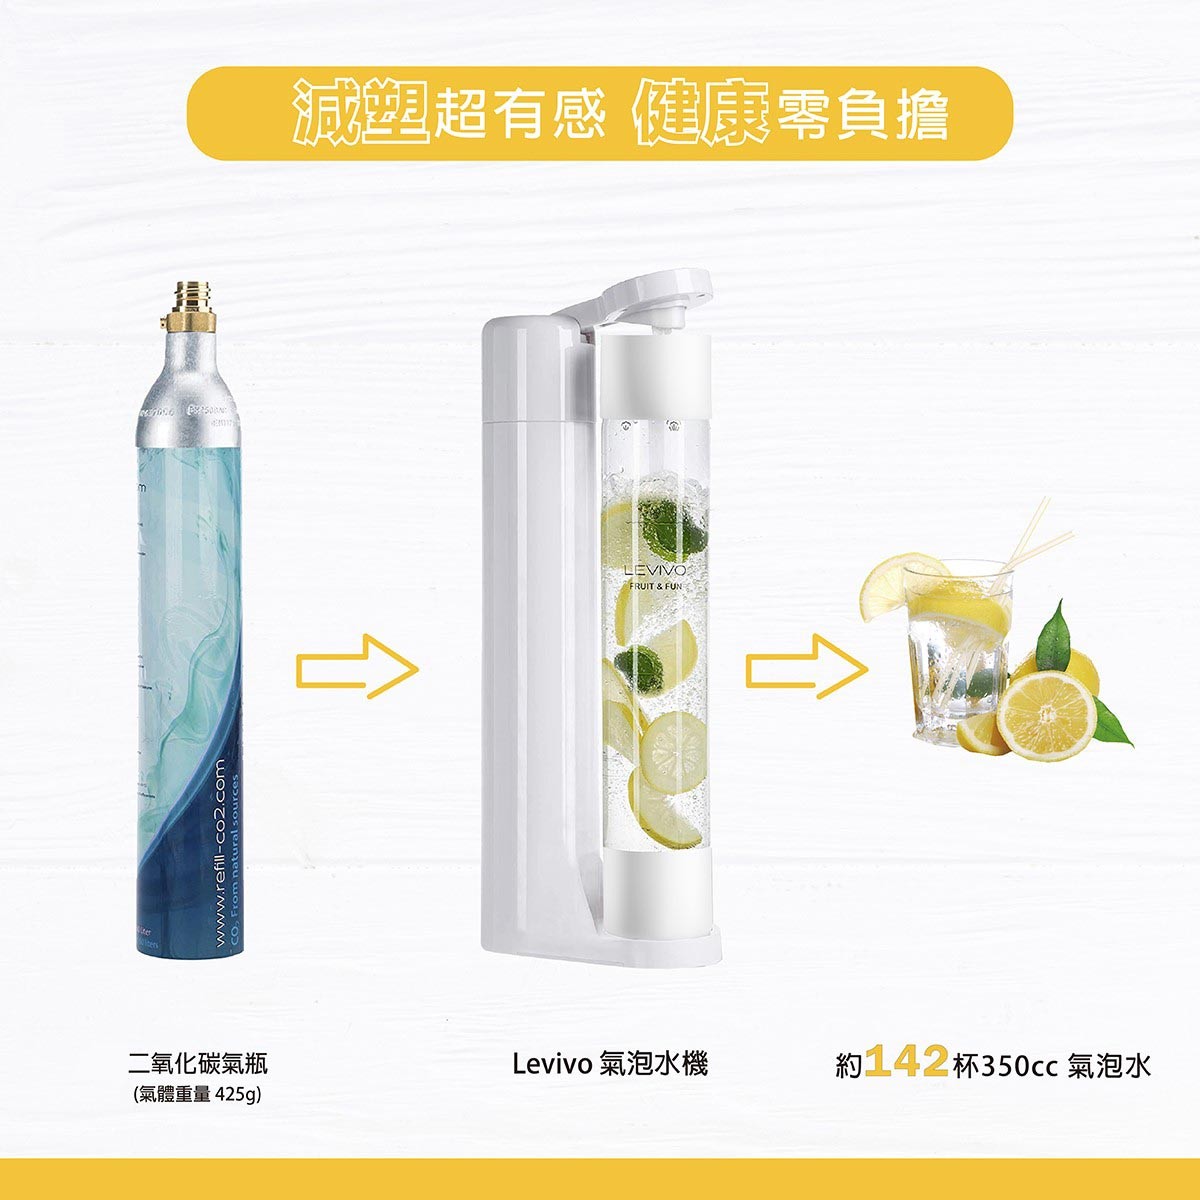 Levivo 氣泡水機補充氣瓶0.6L，一個二氧化碳氣瓶透過氣泡水機，約可製作142杯350CC氣泡水，減塑超有感，健康零負擔。